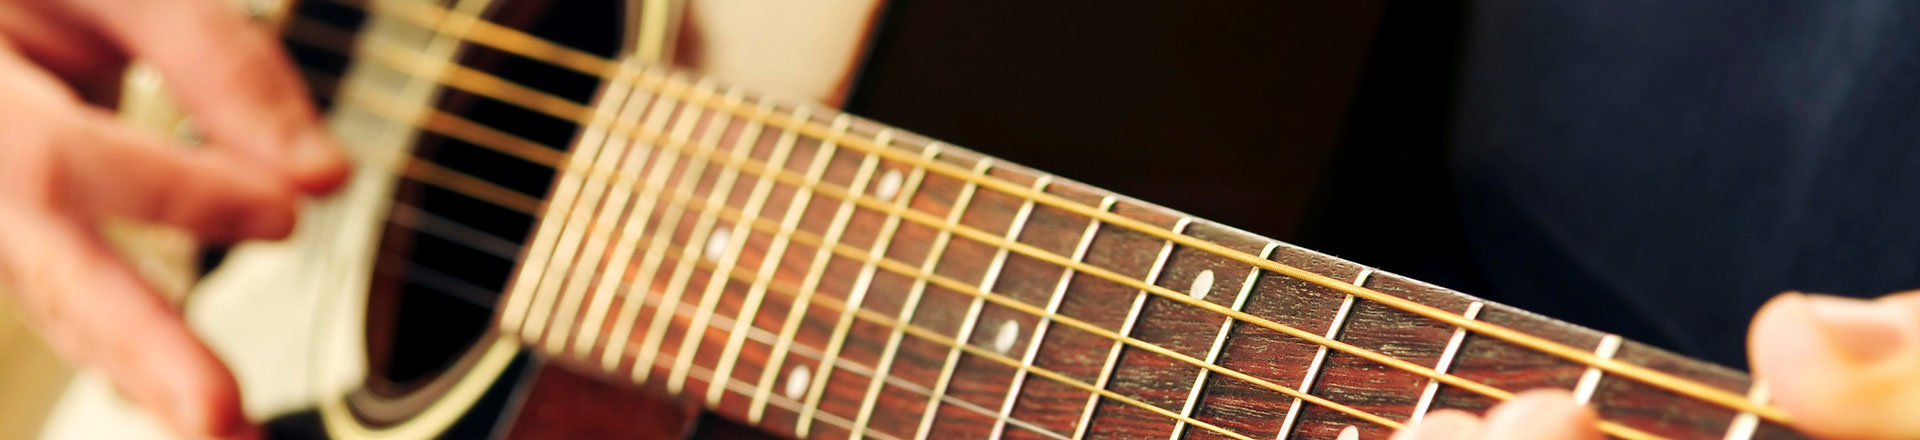 PORADNIK: Gitara akustyczna - Co warto sprawdzić przy zakupie?